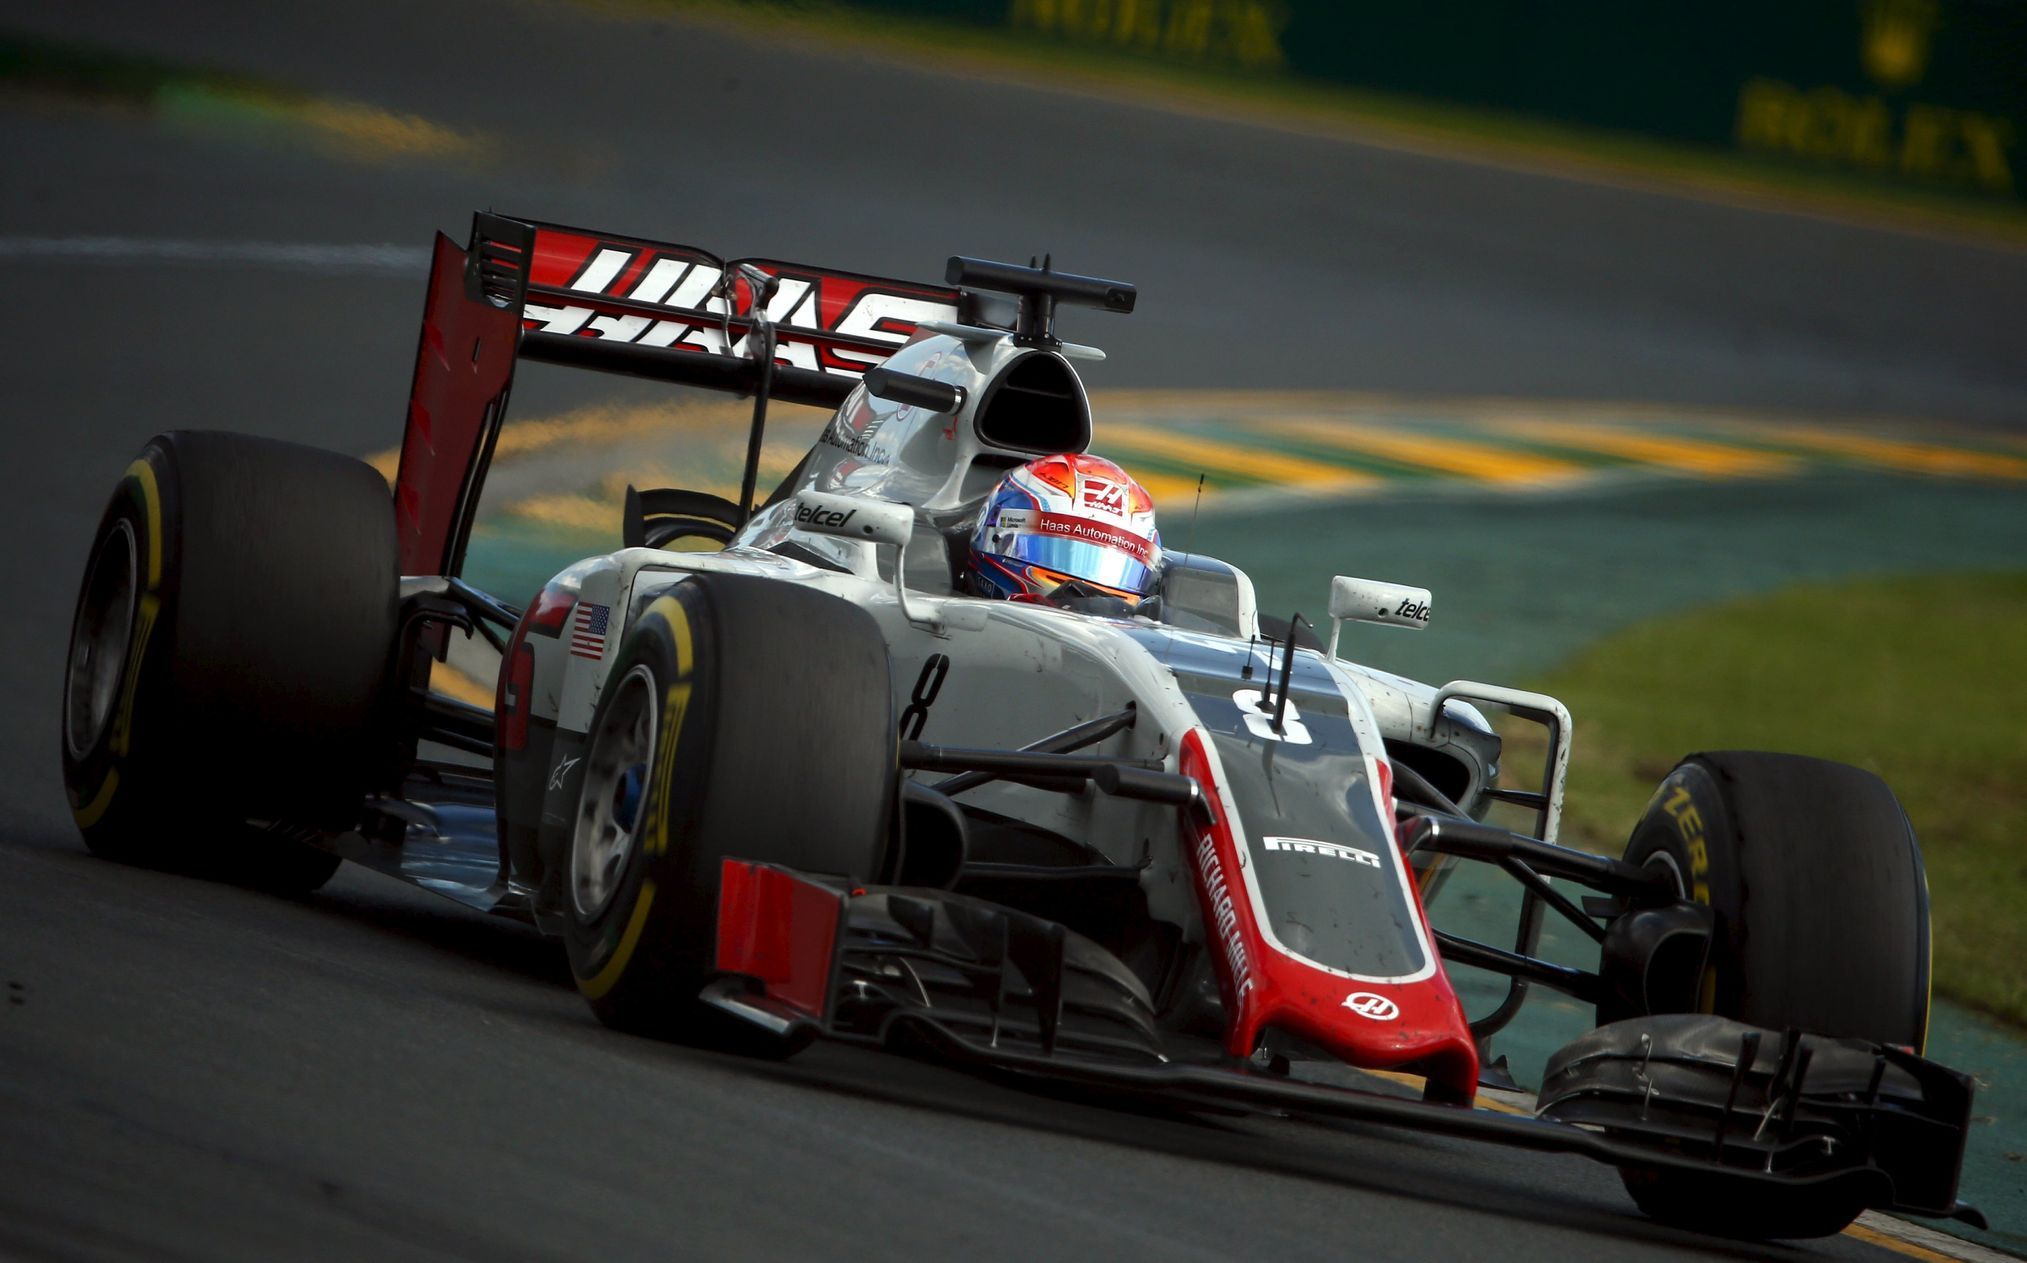 F1, VC Austrálie 2016: Romain Grosjean , Haas